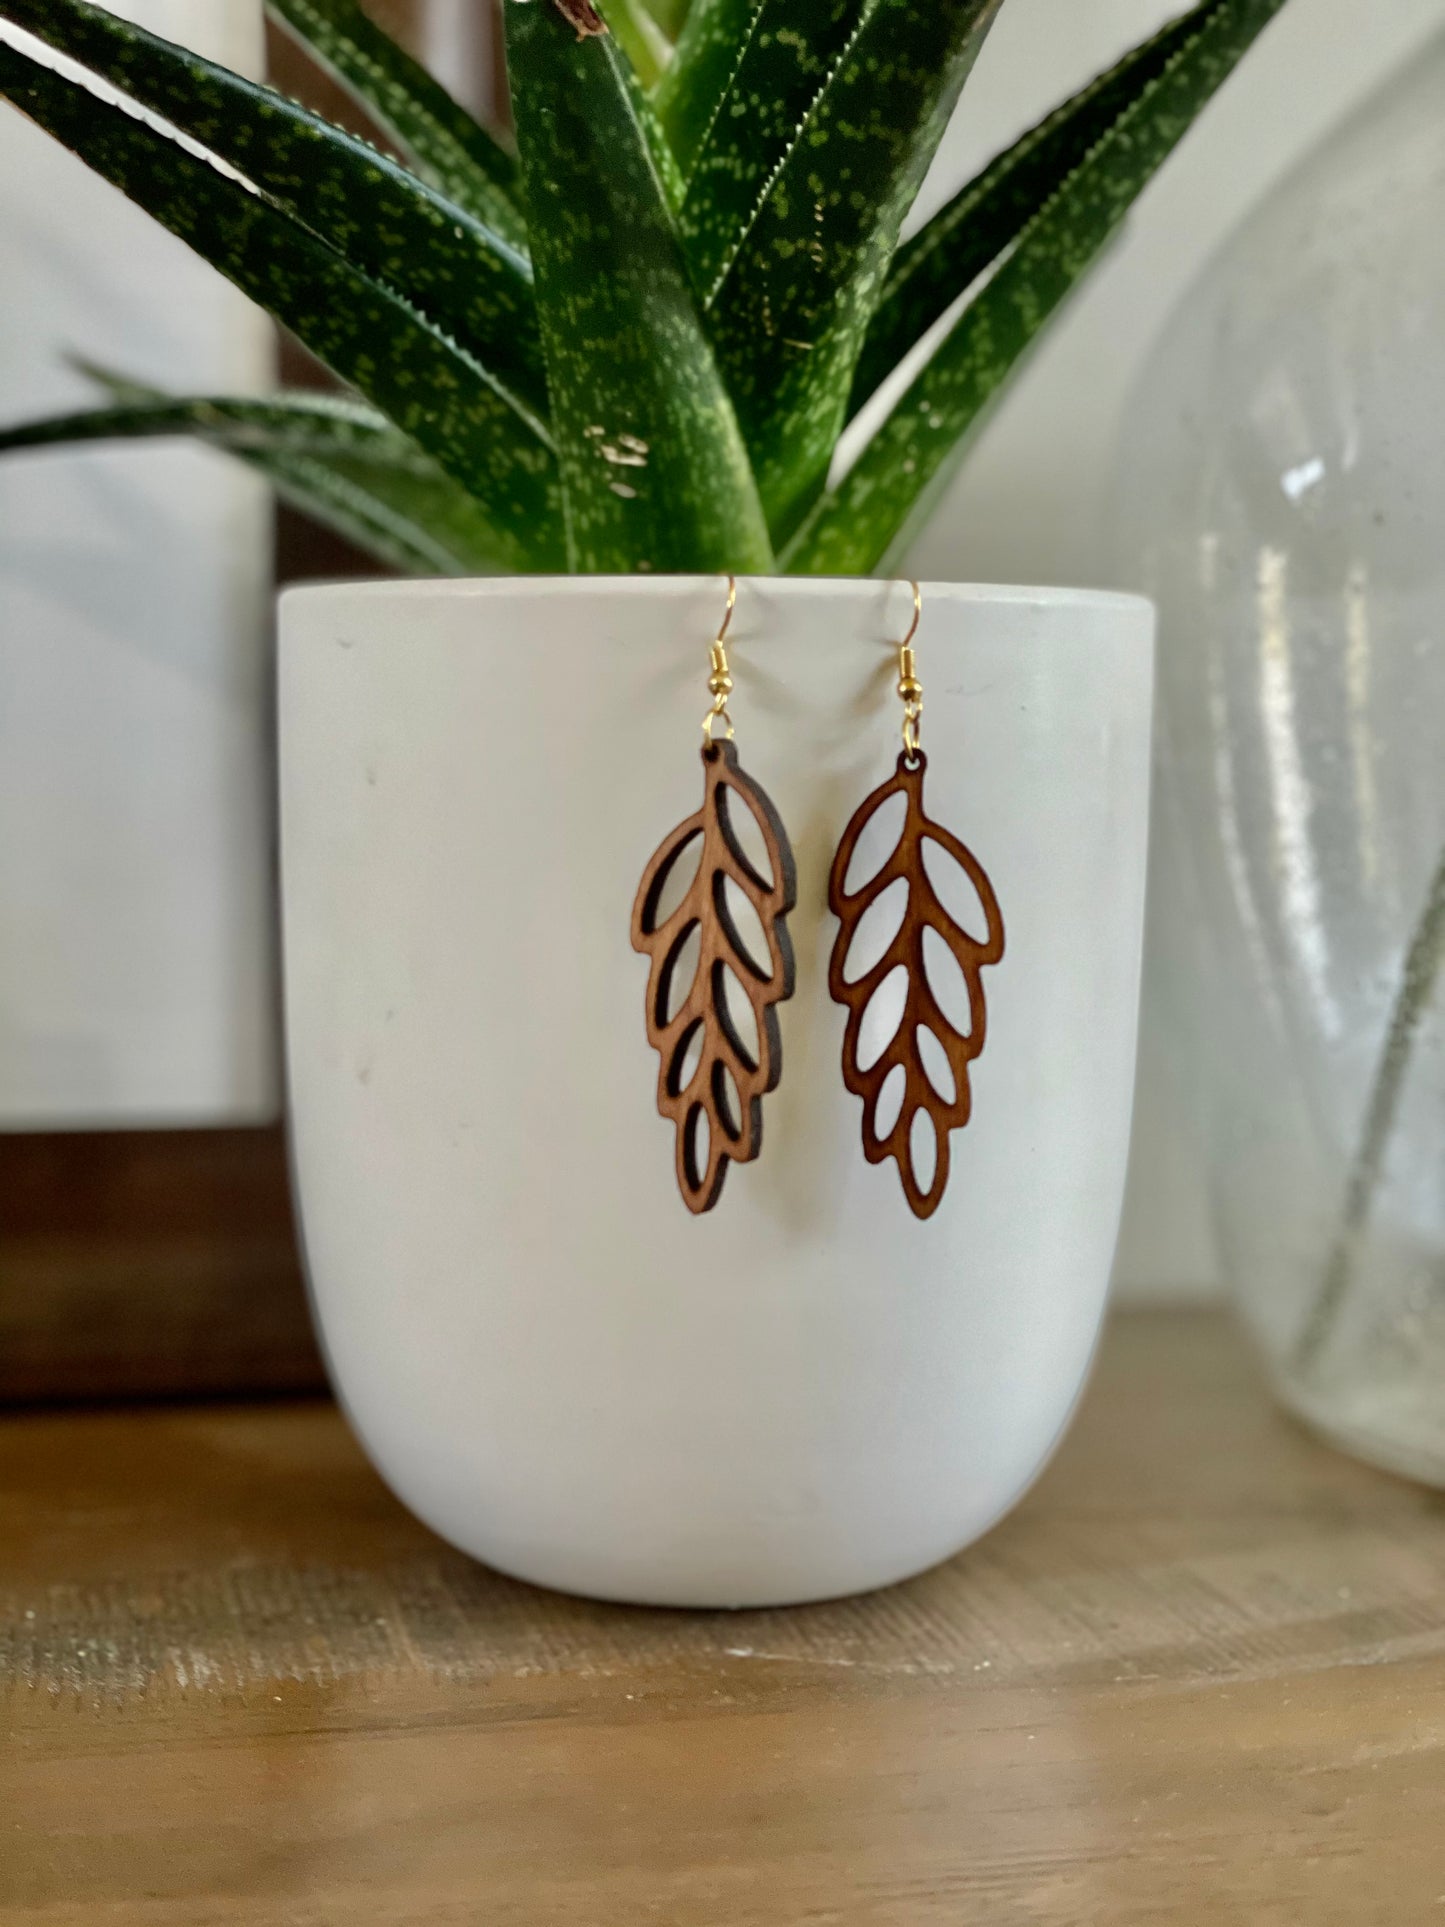 Laurel leaf earrings